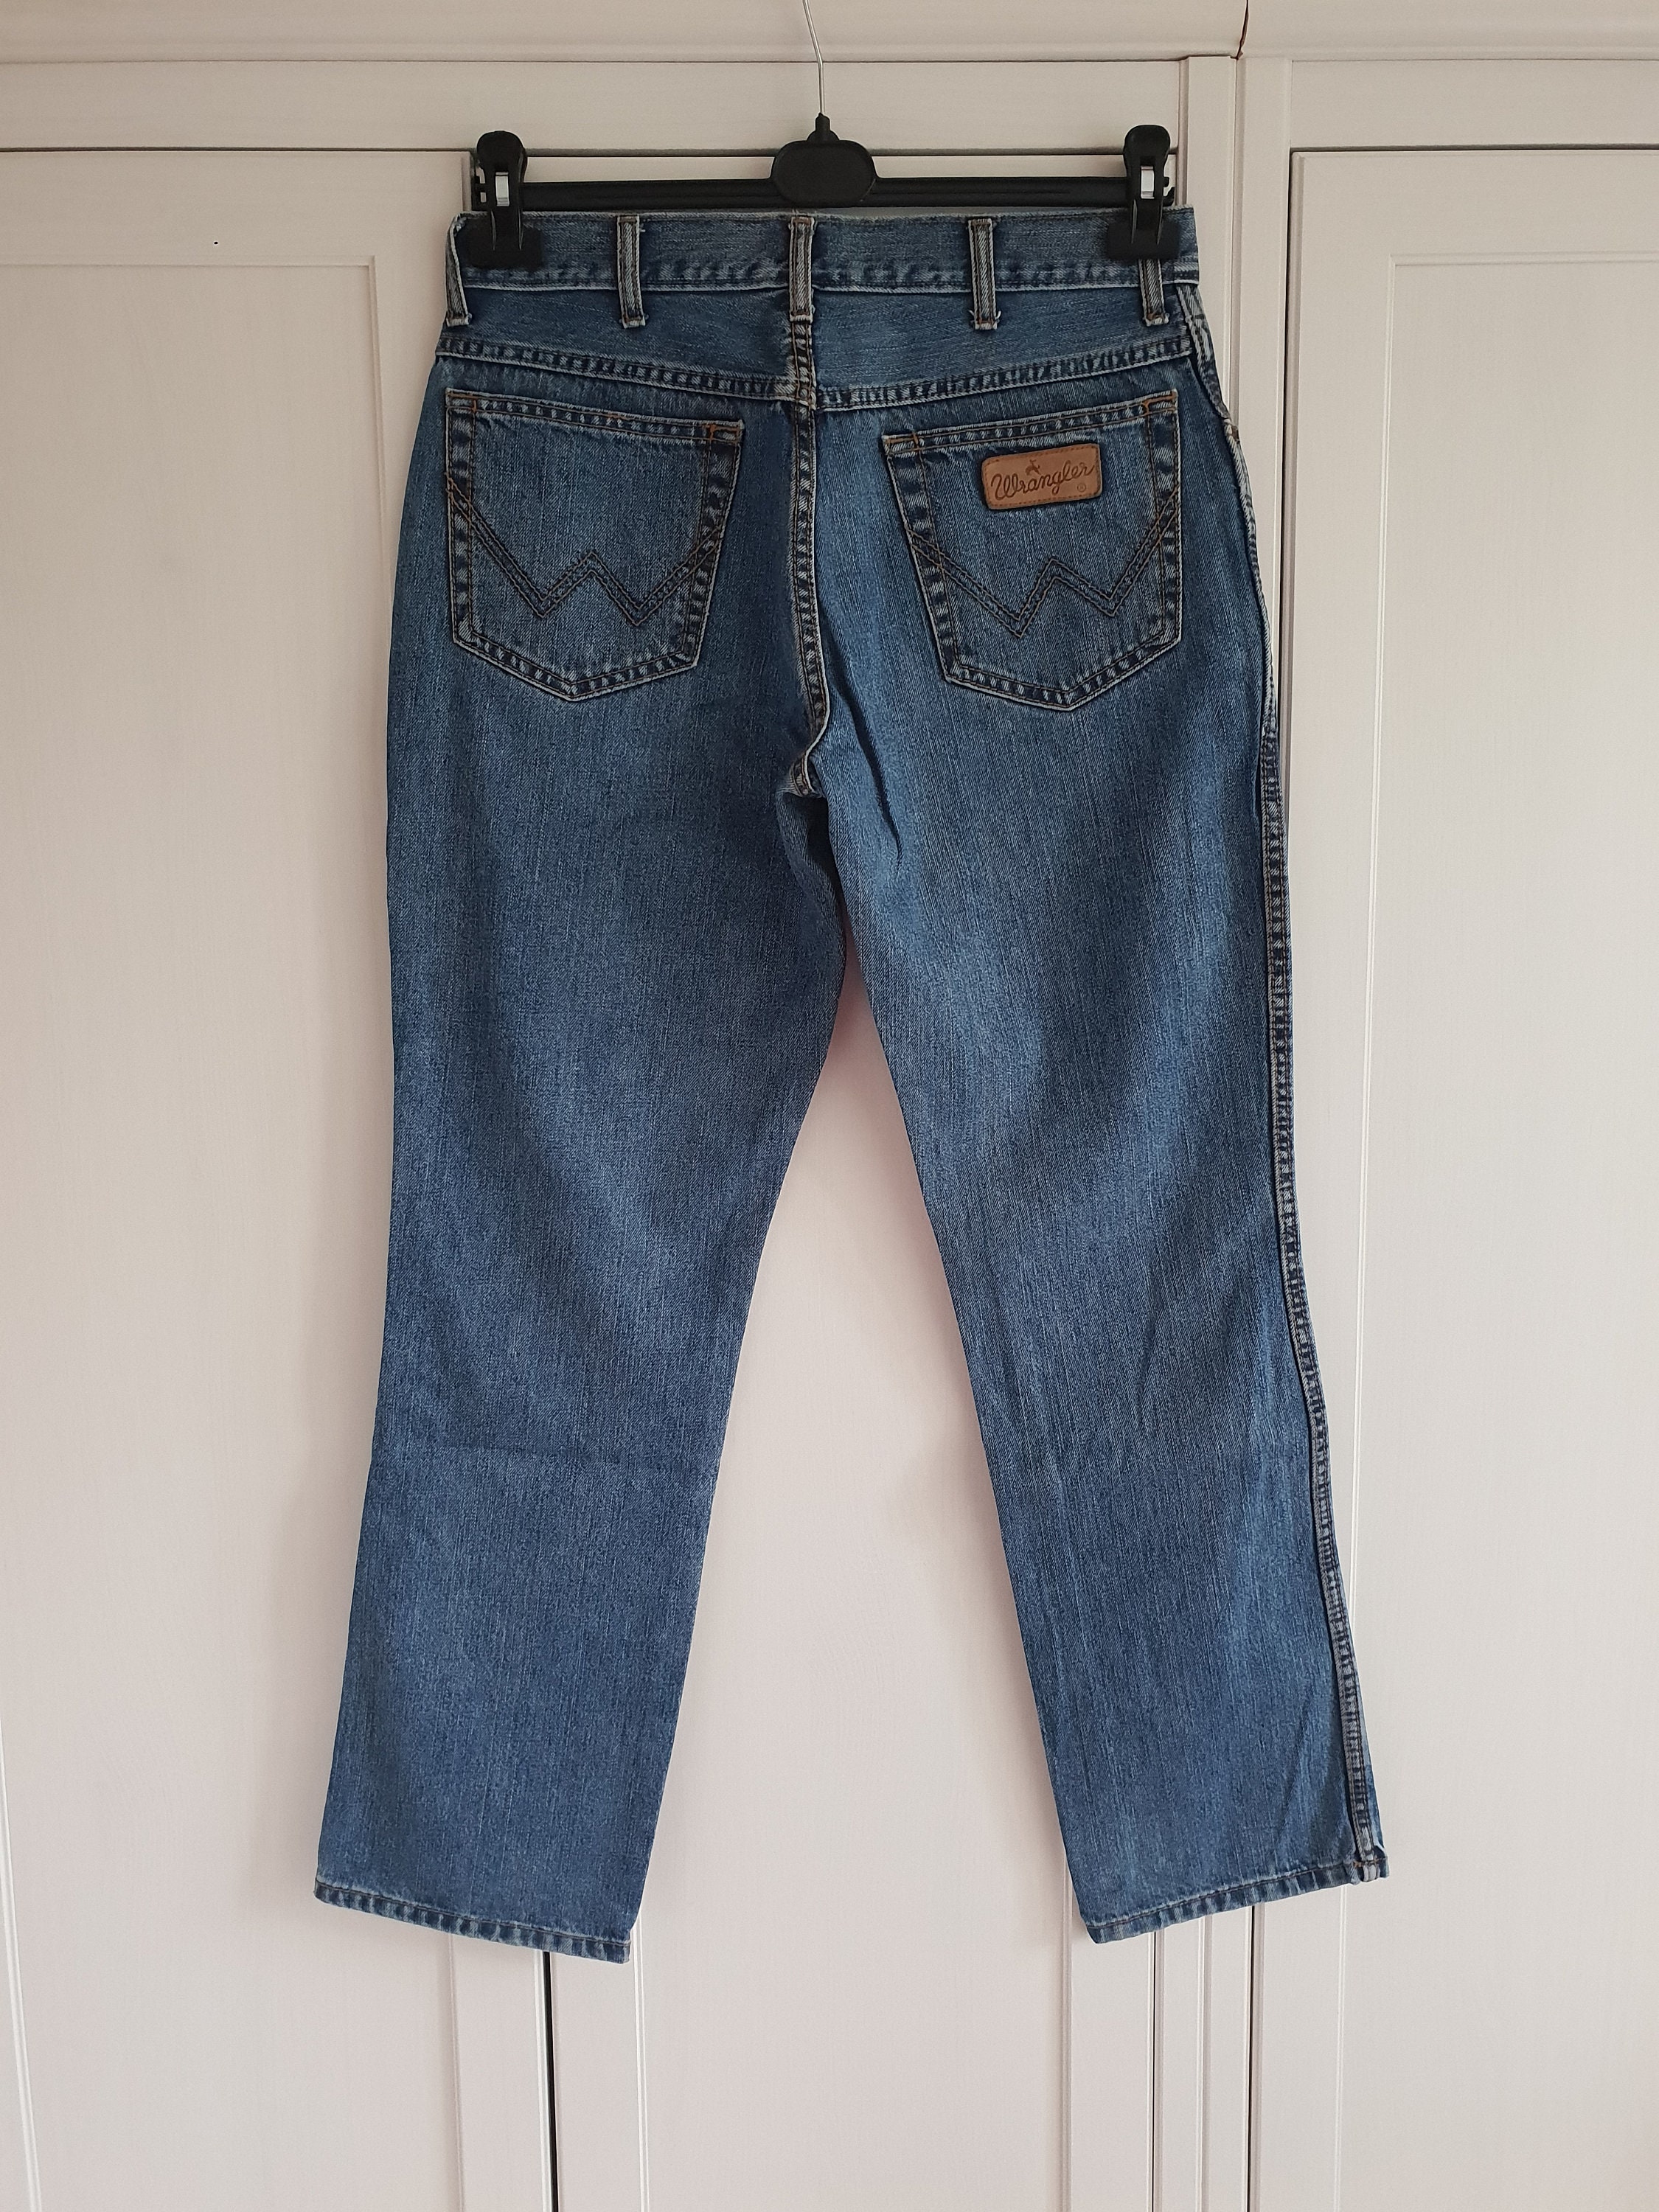 W32 L32 New Mens WRANGLER Straight Jeans Waist 32 Length 32 